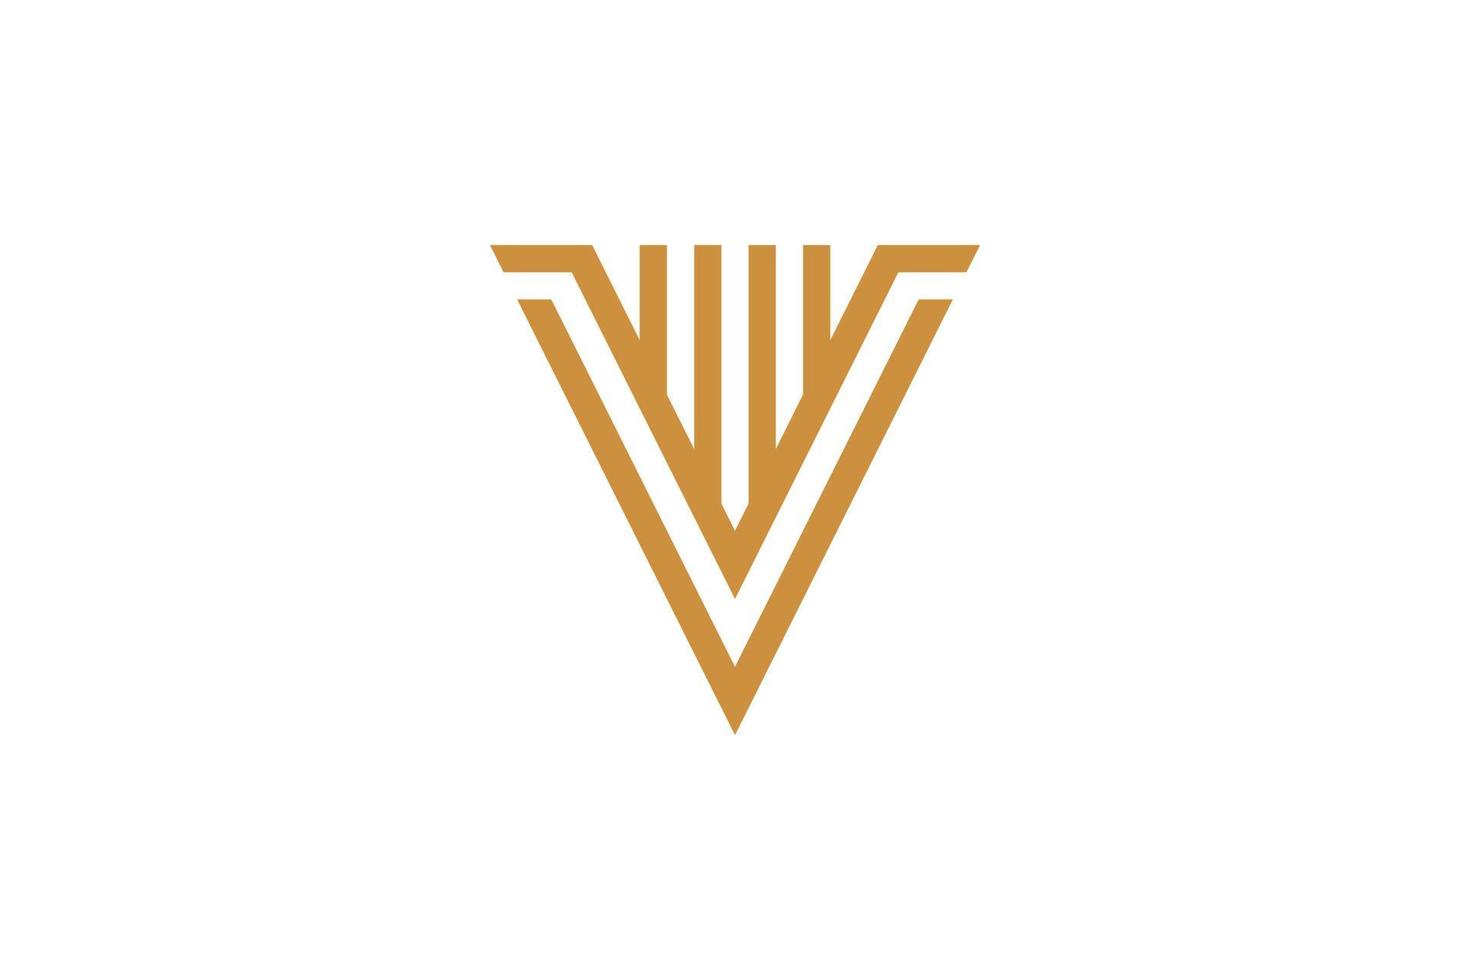 das Monoline v-Logo vektor